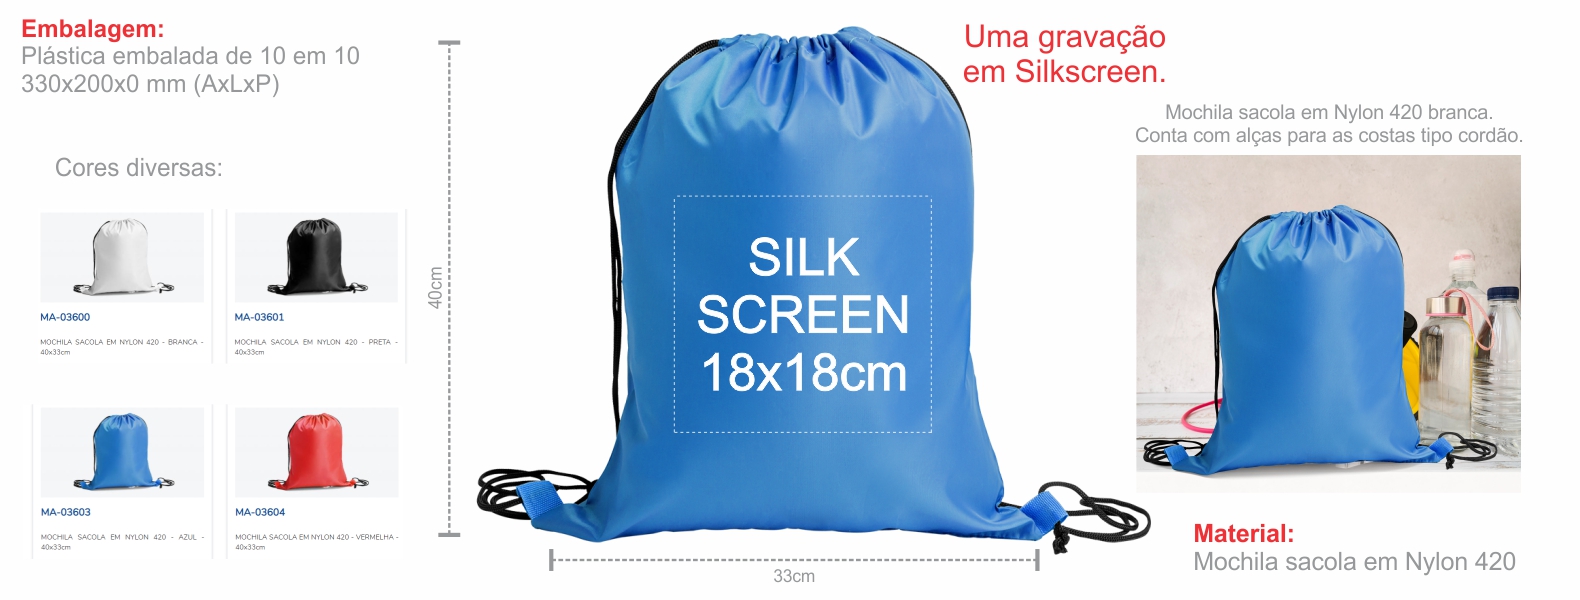 Mochila sacola em Nylon 420 azul. Conta com alças para as costas tipo cordão e cantos reforçados.